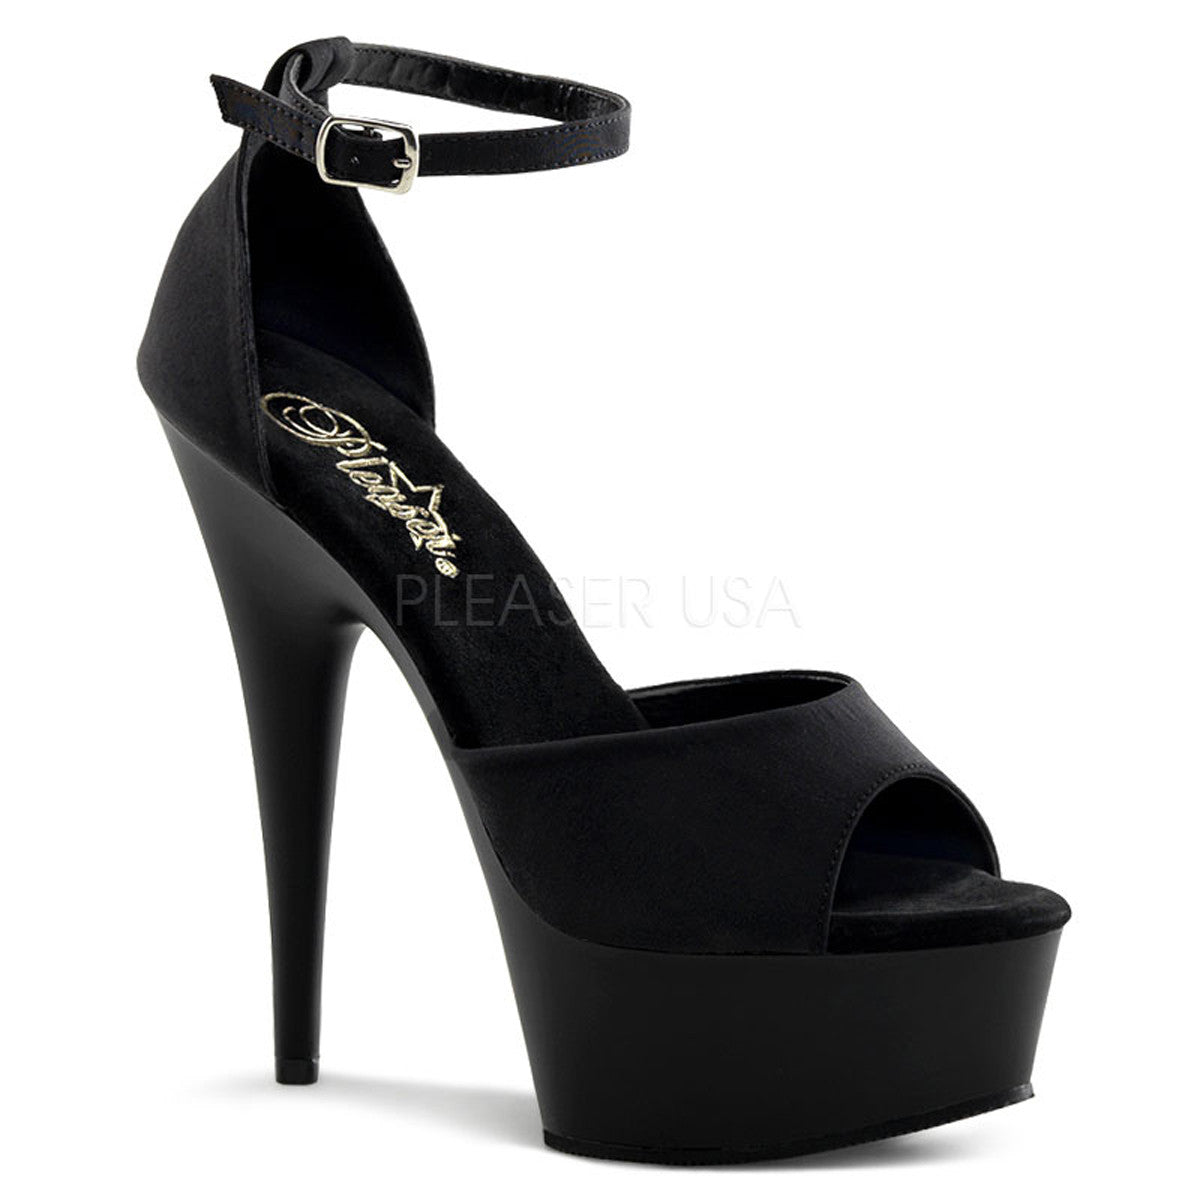 PLEASER DELIGHT-618PS Black Peau de Soie- Black Matte Ankle Strap Sandals - Shoecup.com